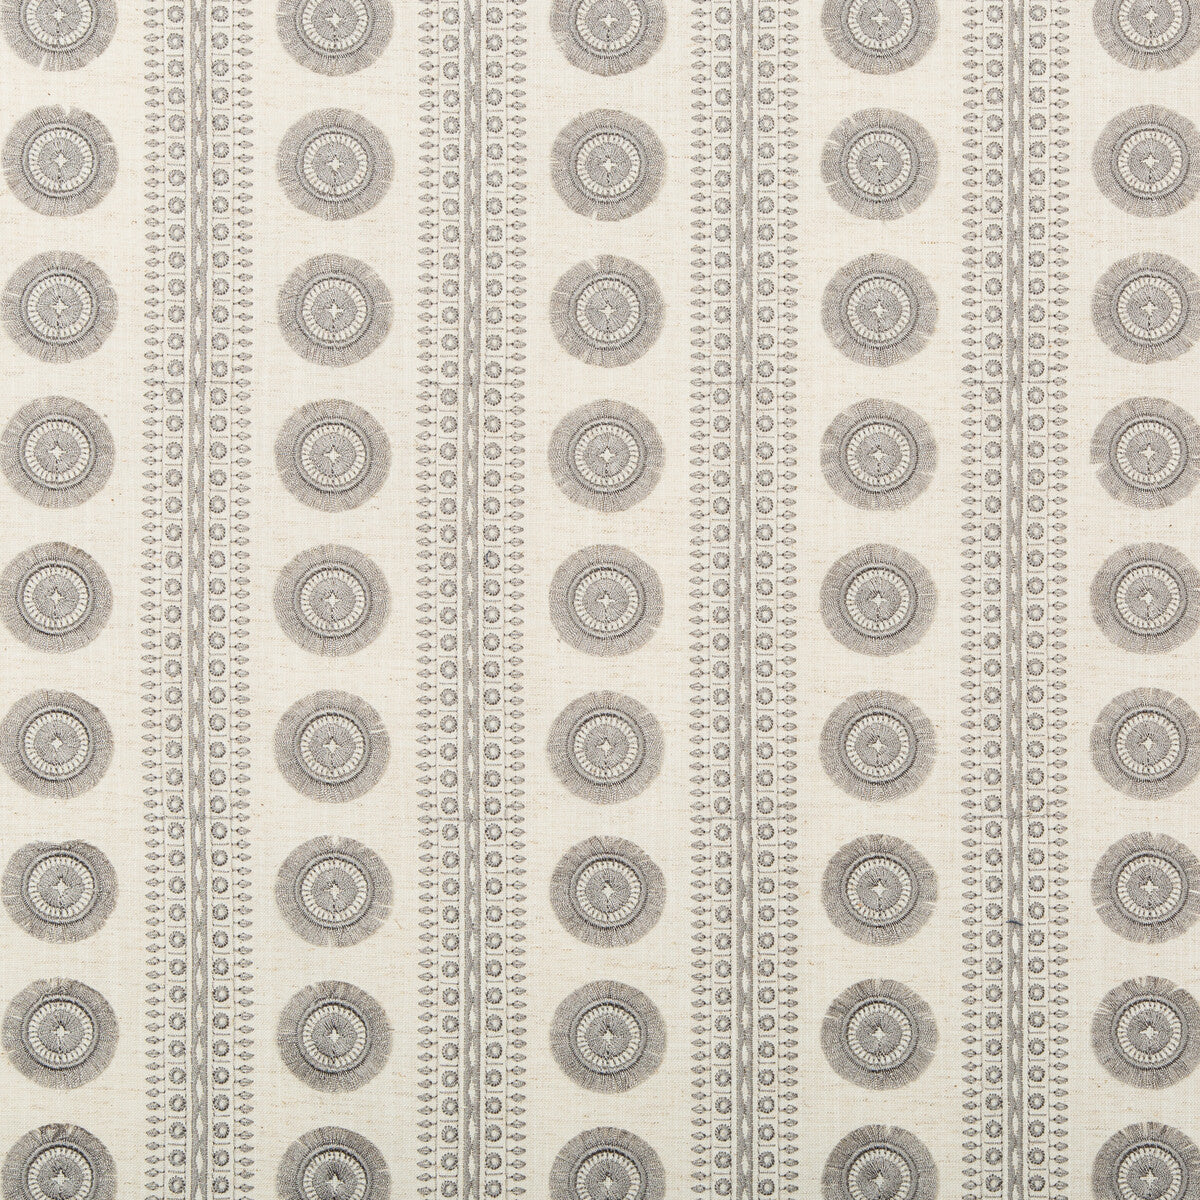 Kravet Basics fabric in 4688-11 color - pattern 4688.11.0 - by Kravet Basics